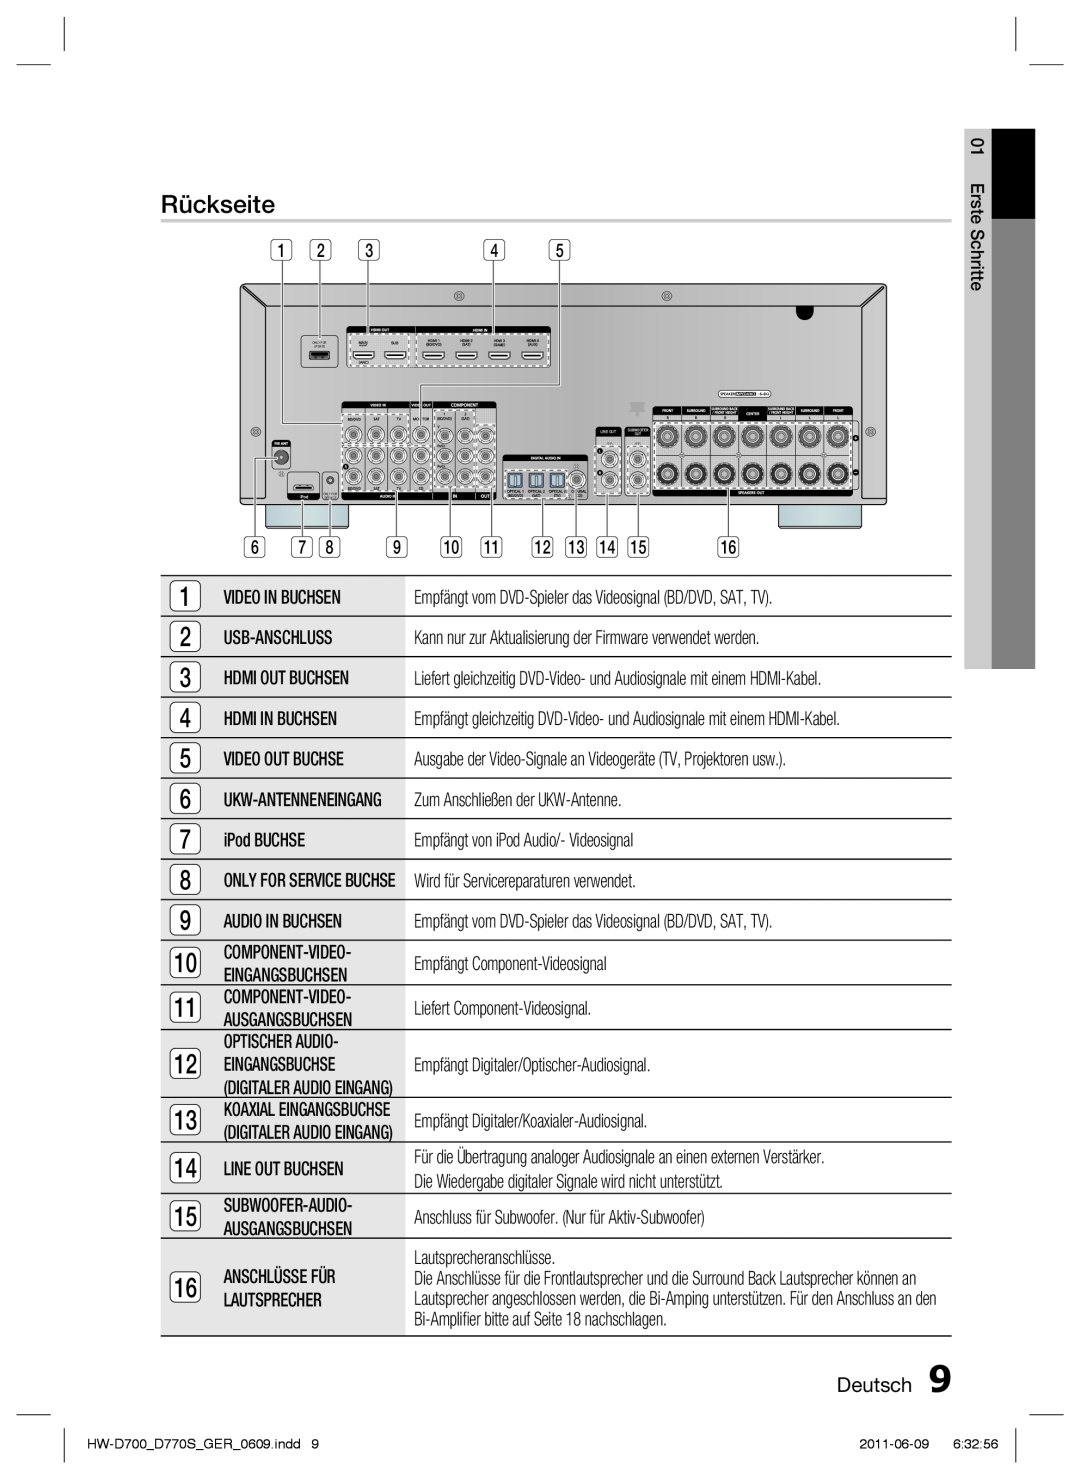 Samsung HW-D700/EN manual Rückseite, Deutsch, Erste, Schritte, Ausgabe der Video-Signale an Videogeräte TV, Projektoren usw 